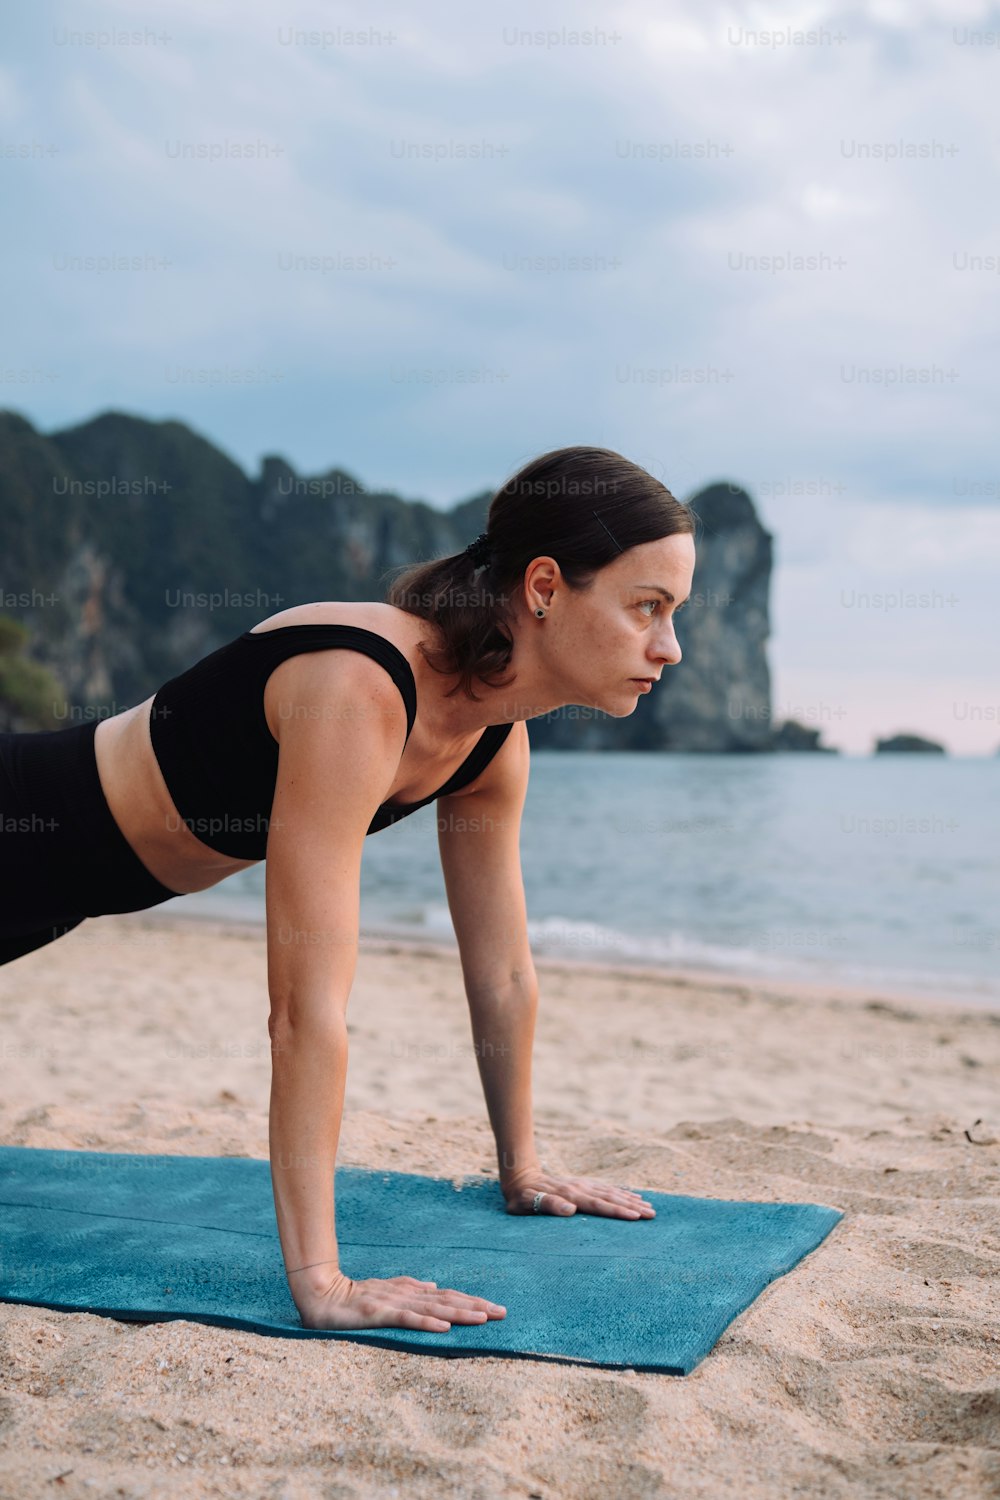 Una mujer está haciendo una flexión en una toalla en la playa